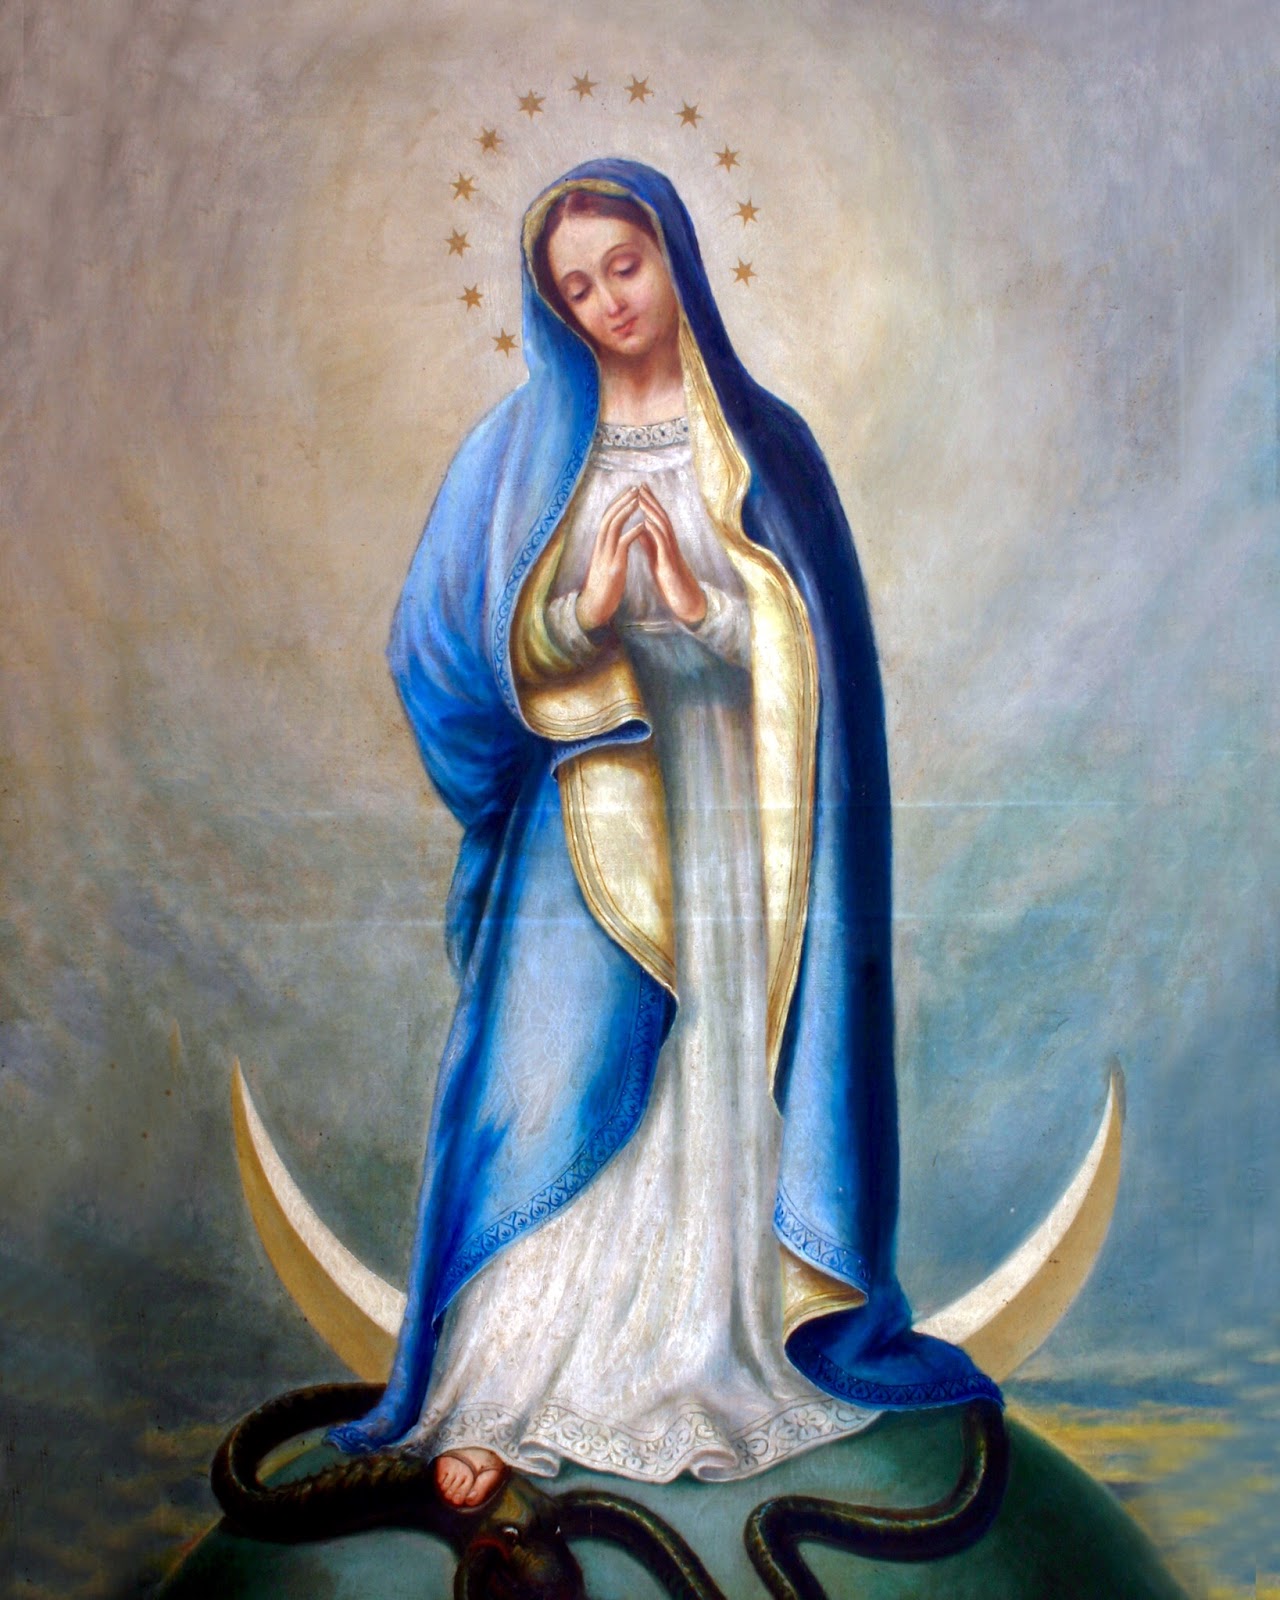 Дева Мария Шлюха